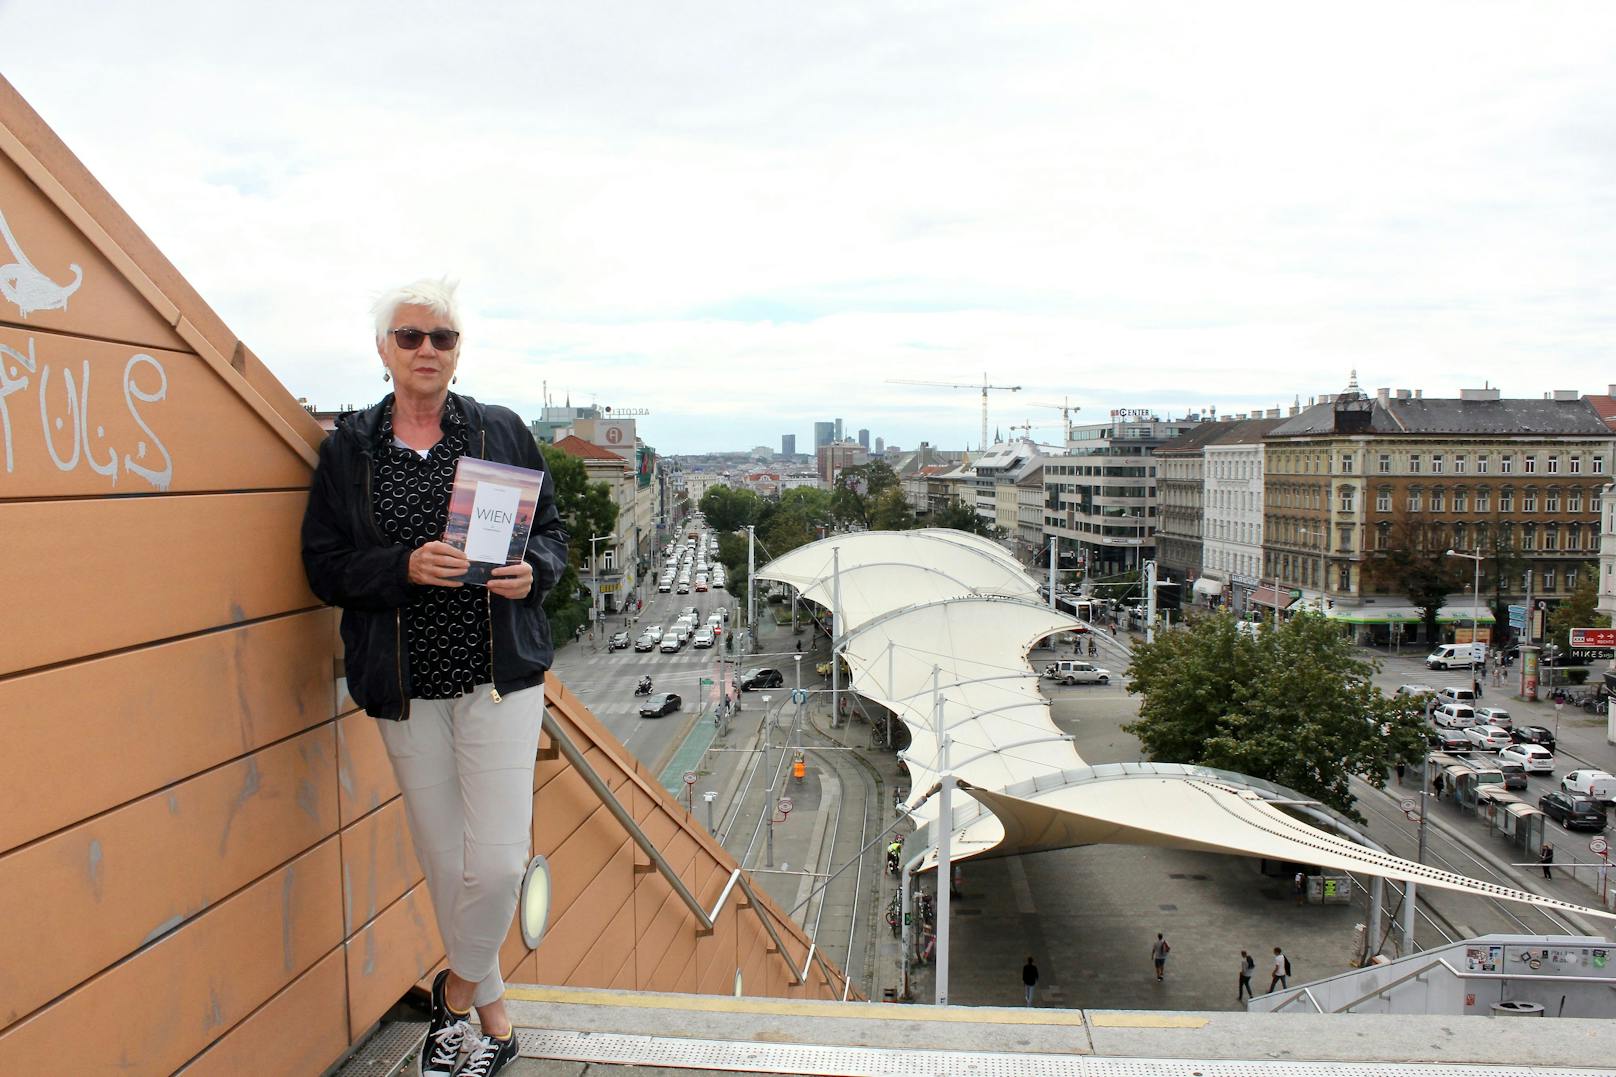 In ihrem neuen Buch "Wien für Fortgeschrittene" zeigt Autorin Ilse König (72) nicht nur das "schöne" Wien, sondern auch die "Ecken und Kanten" der Stadt.